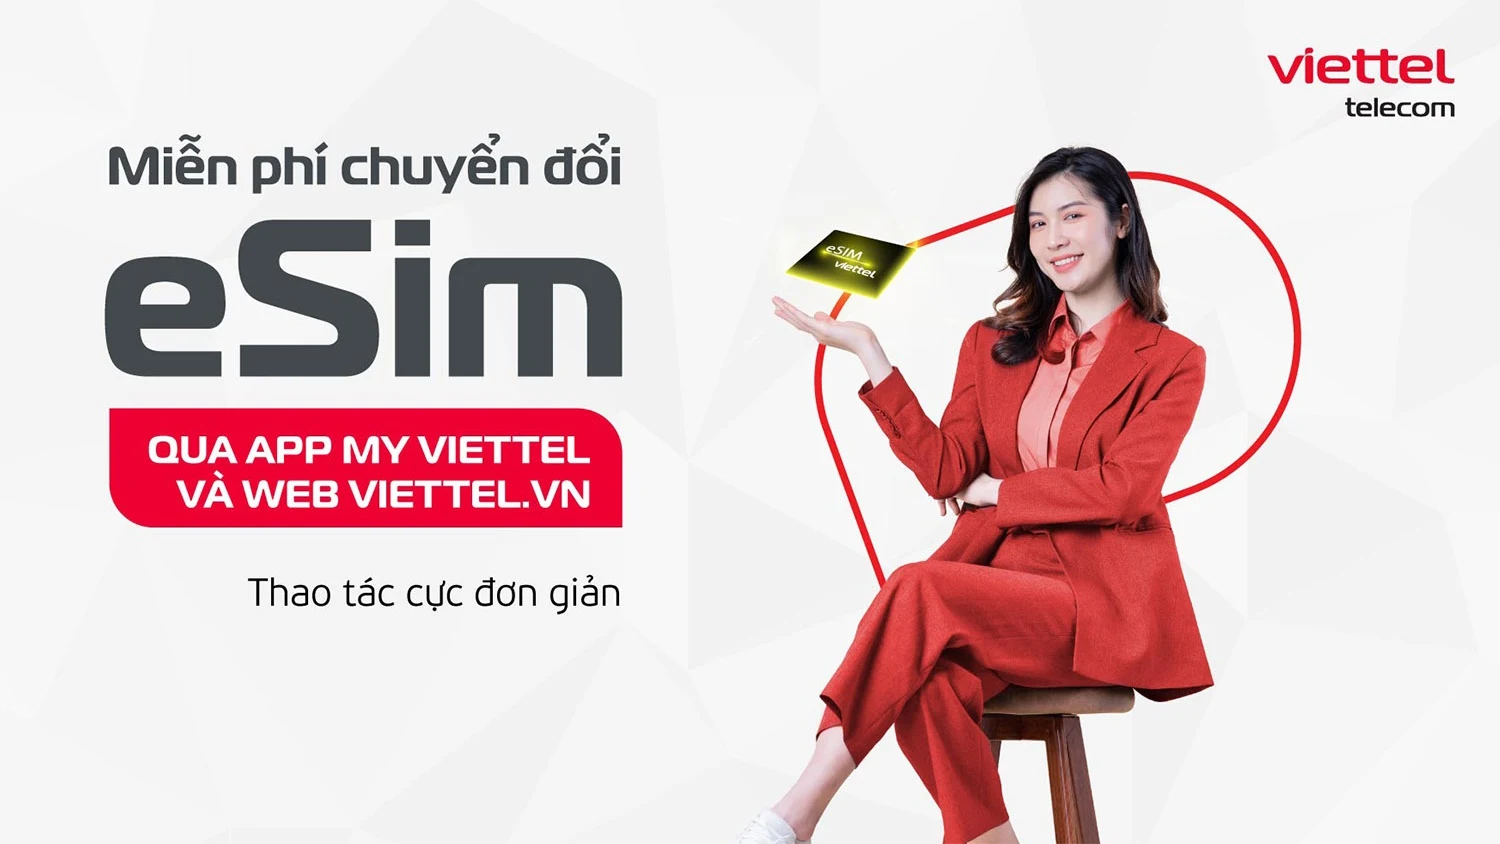 Cách chuyển đổi eSim Viettel Online  miễn phí